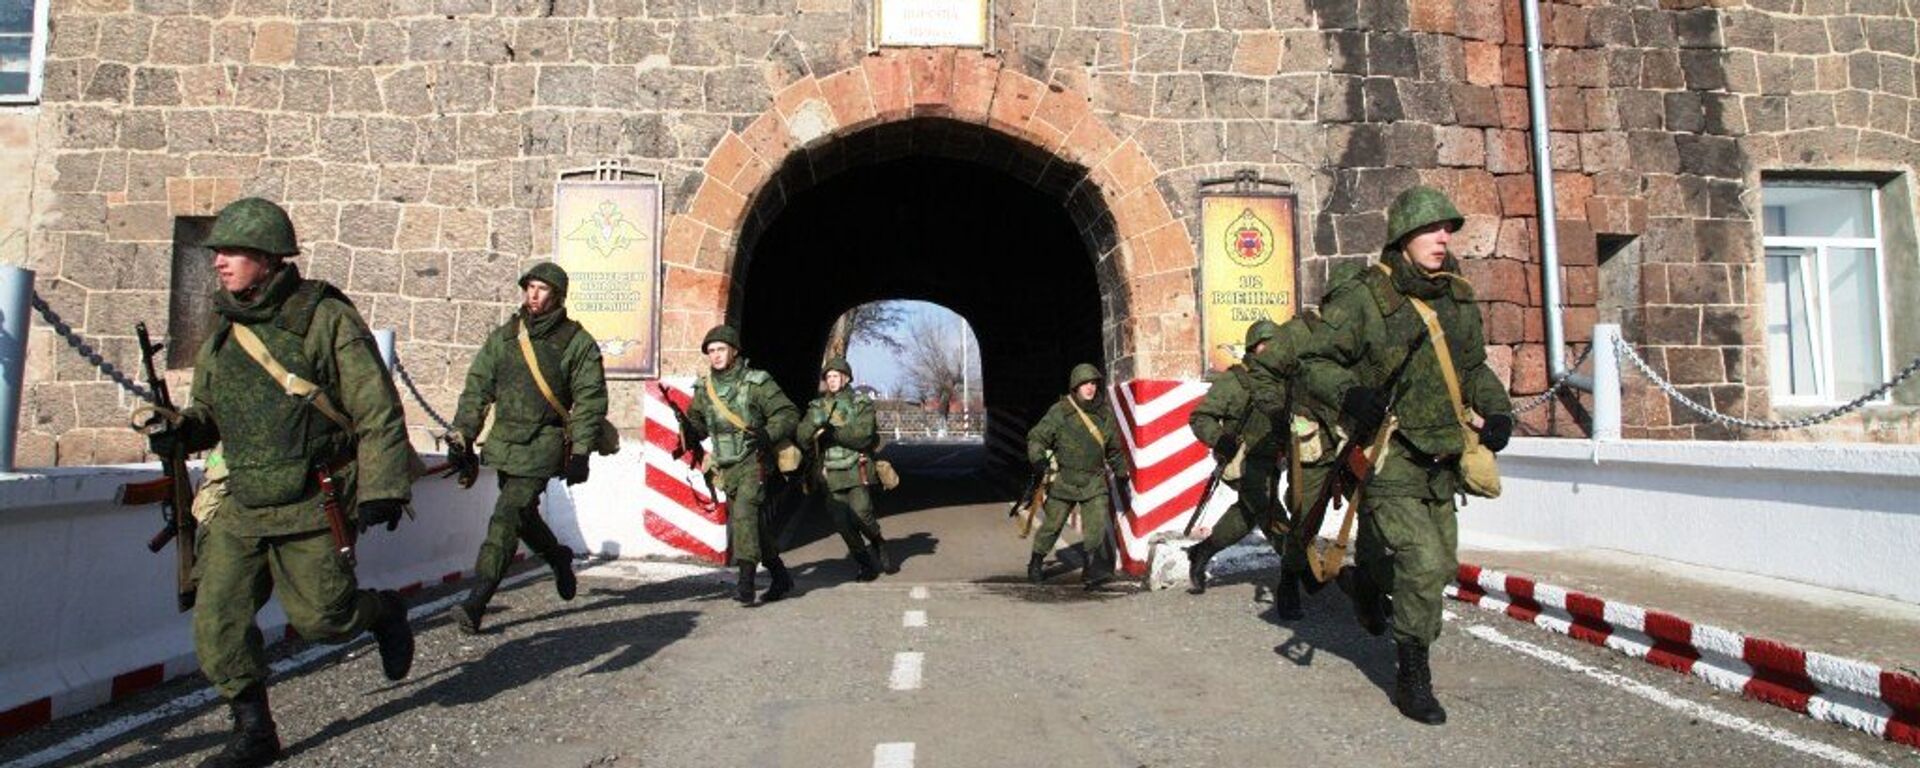 В Армении военнослужащие отразили атаку на штаб военной базы ЮВО условной диверсионной группы. - Sputnik Армения, 1920, 22.02.2021